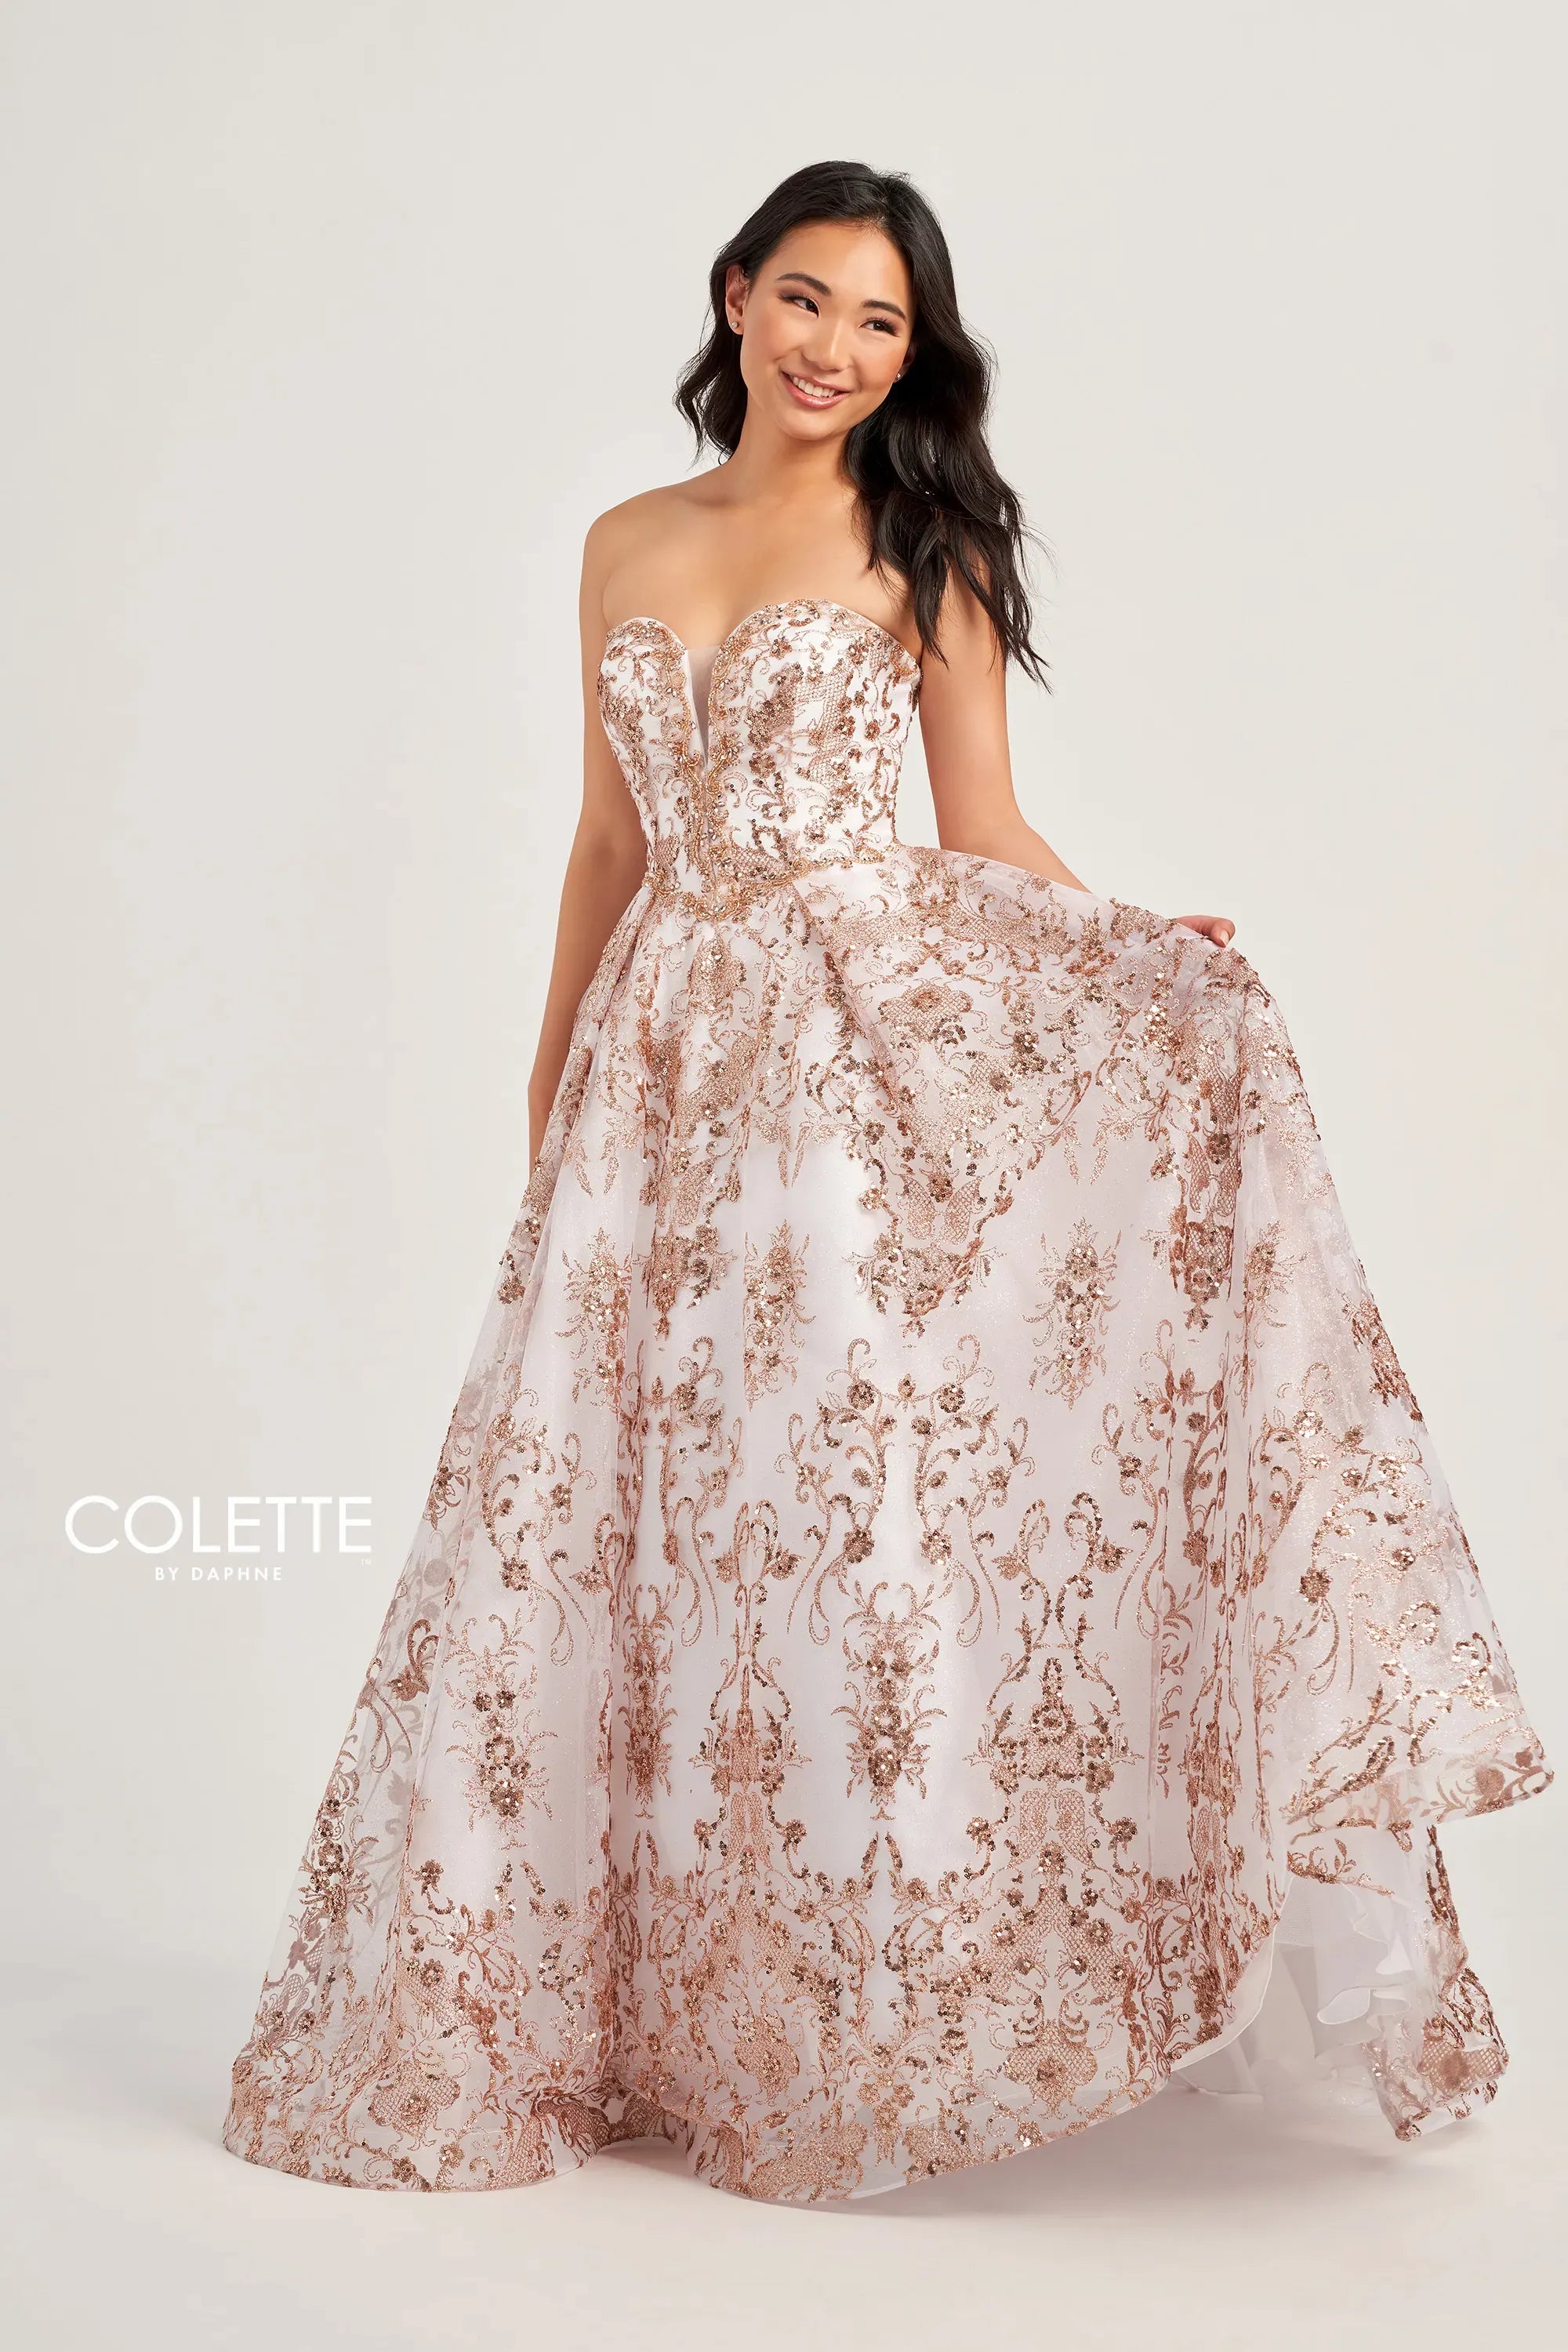 Colette CL5101